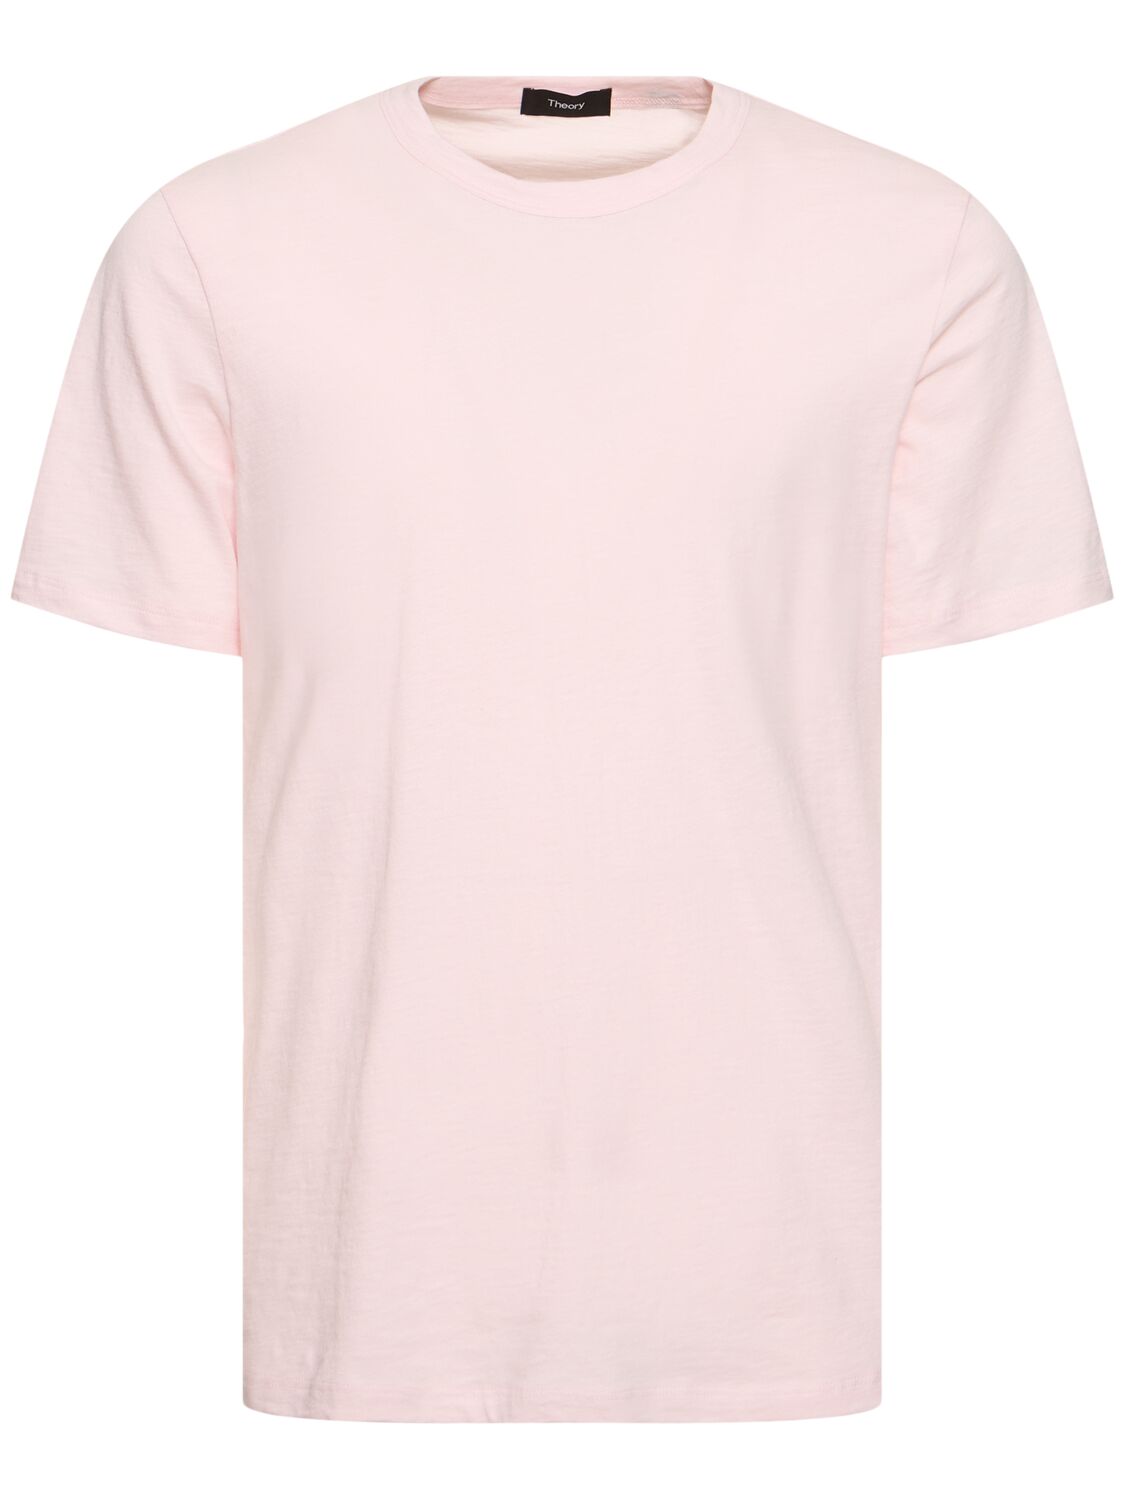 Luxe Cotton Short Sleeve T-shirt